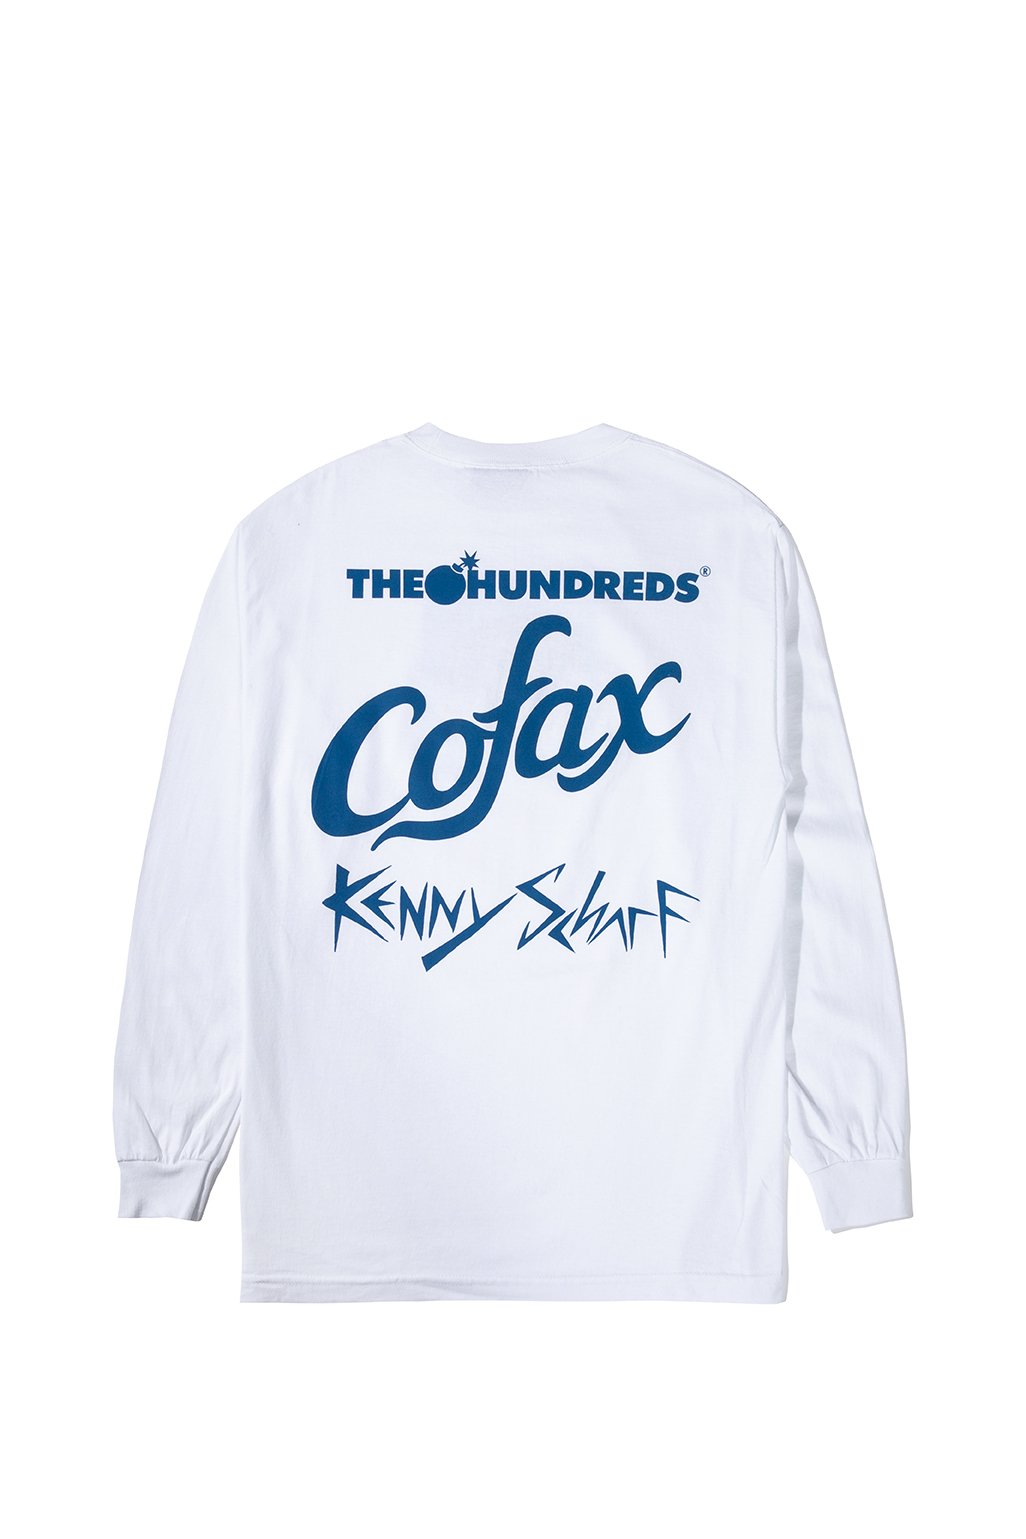 Cofax X Kenny Scharf X The Hundreds L/S Shirt